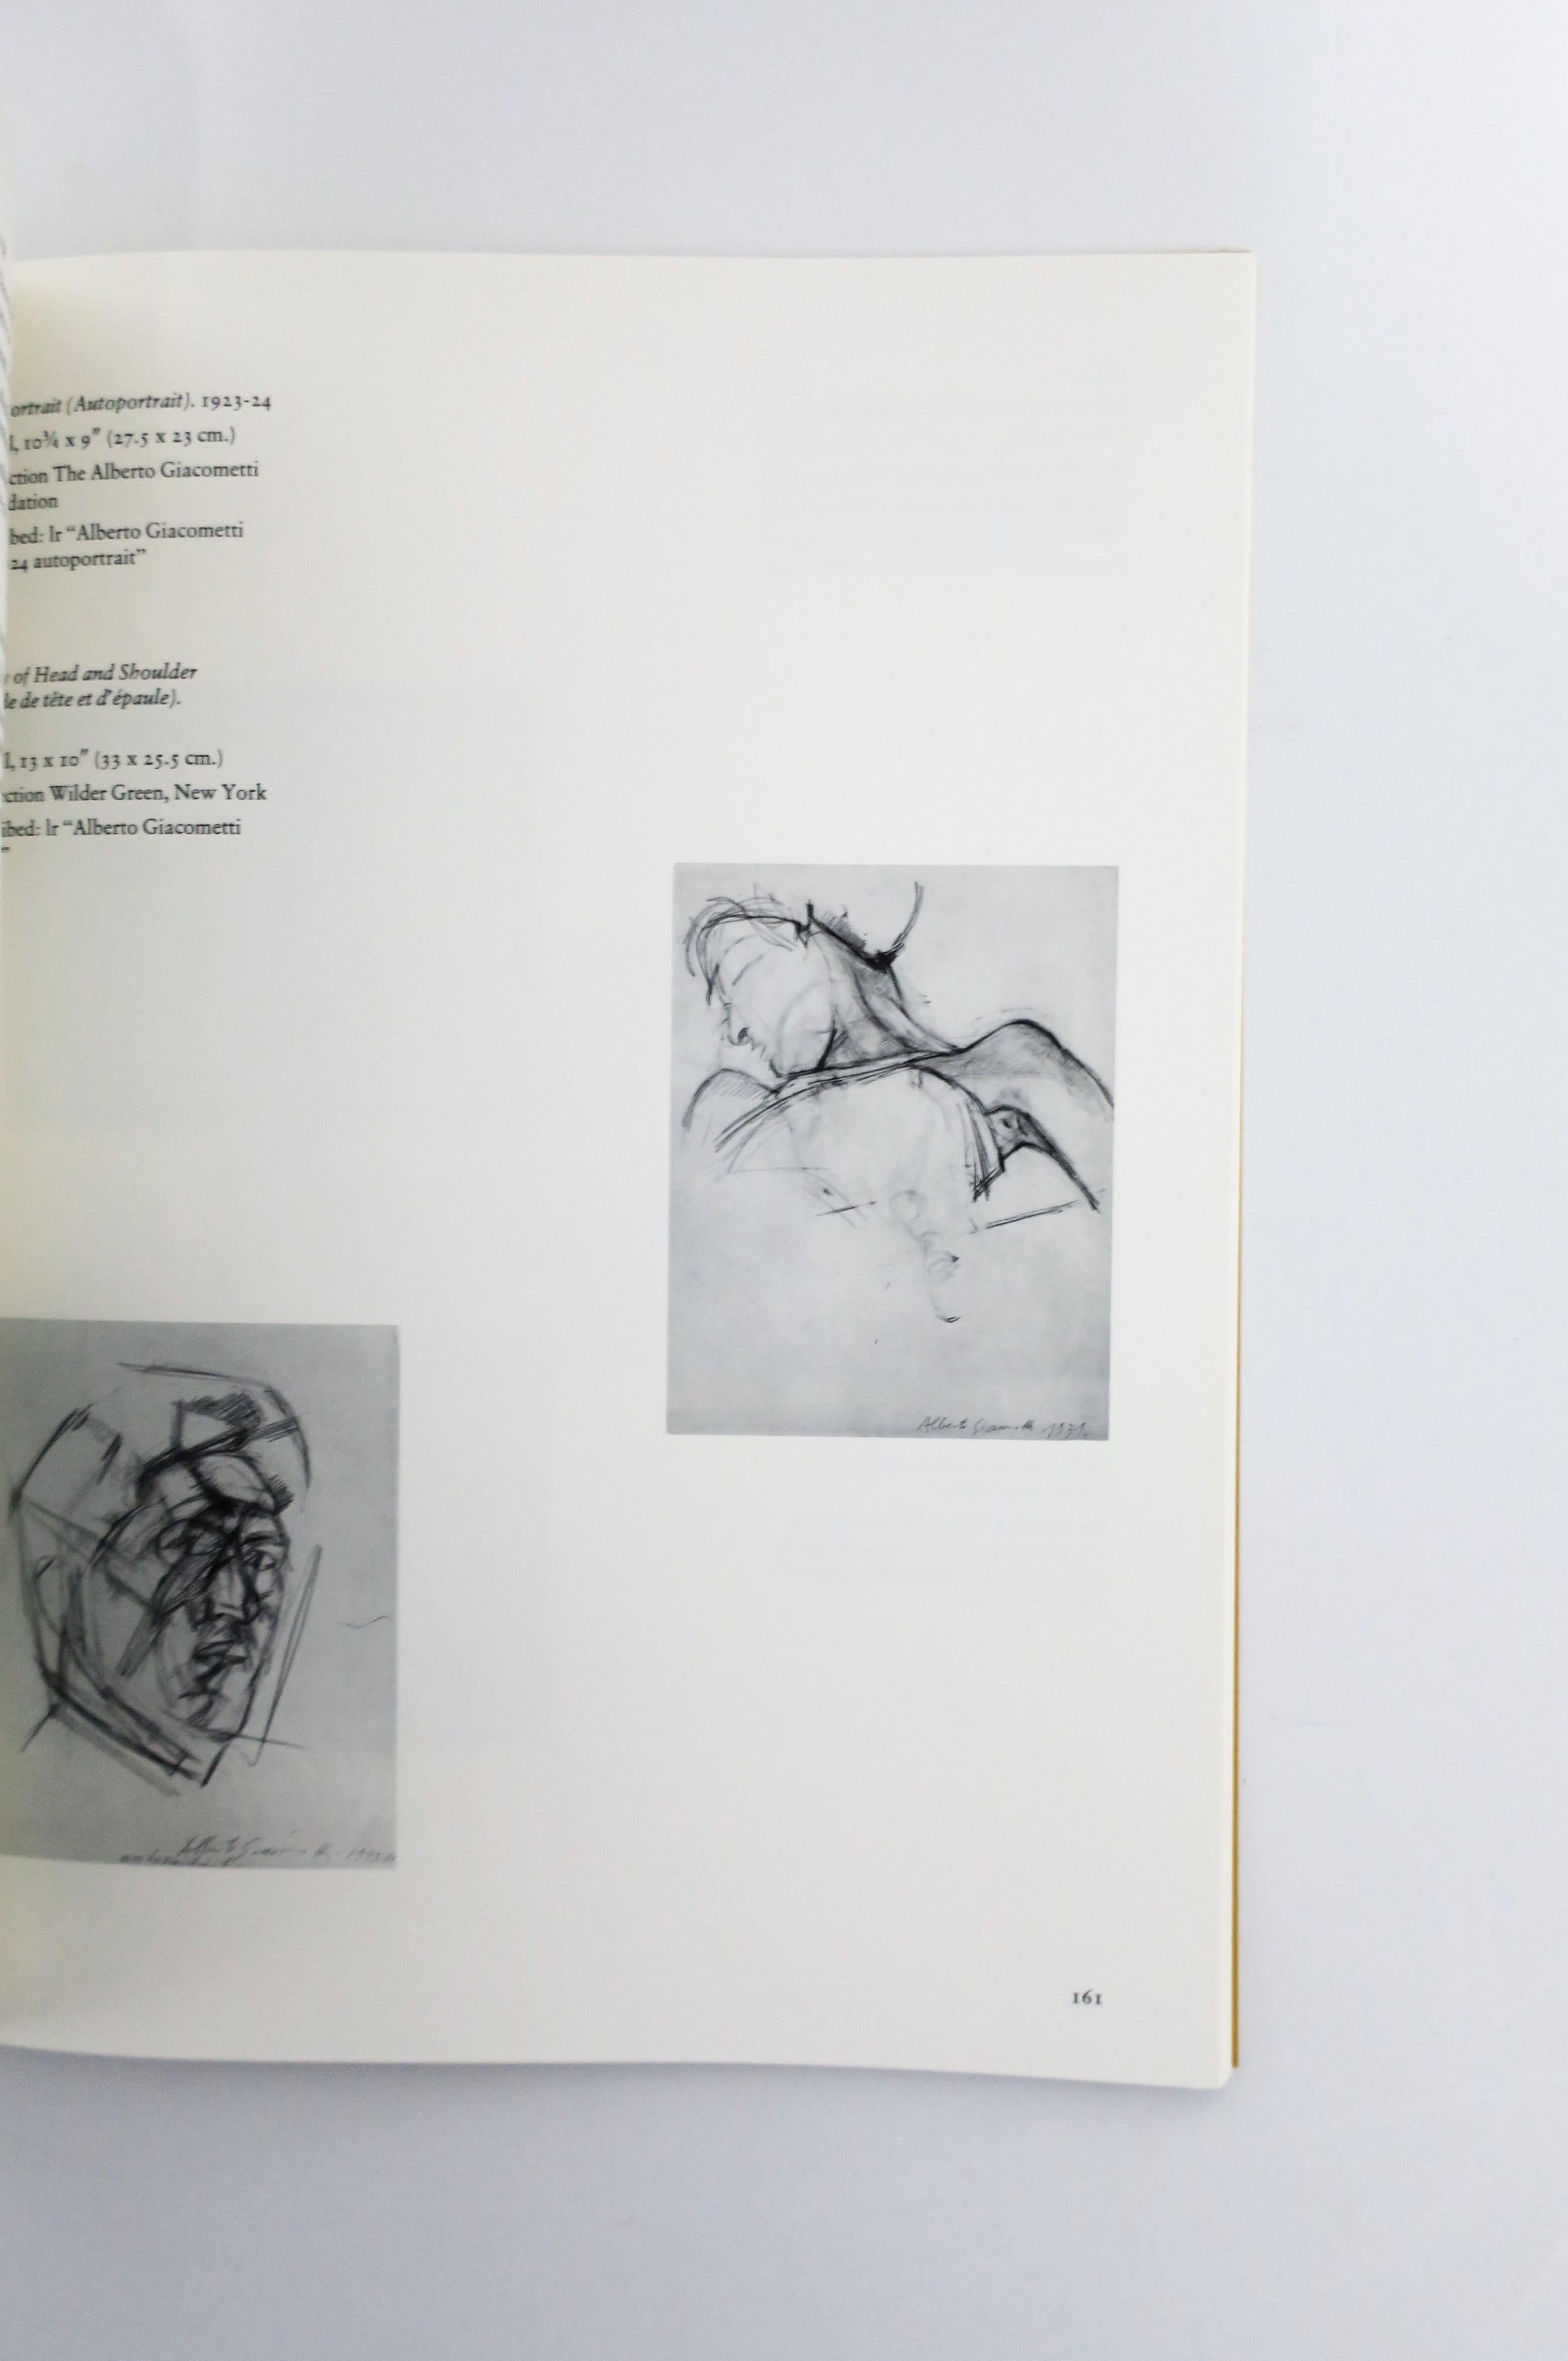 Alberto Giacometti A Retrospective Exhibition Book, 1974, New York 1